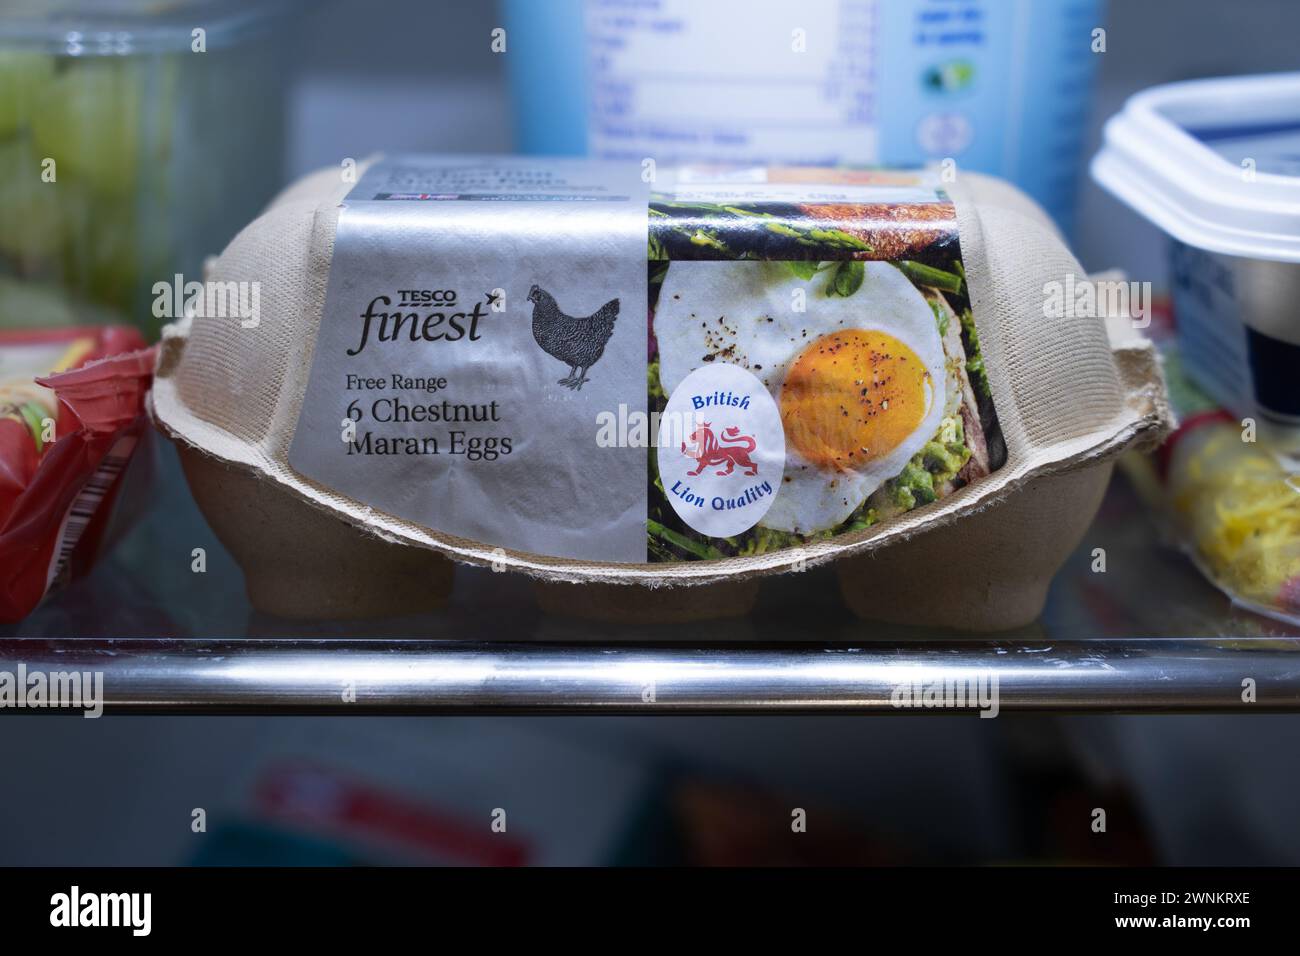 Tesco Finest Castagne maran uova allevate a terra su un ripiano del frigorifero in una scatola di uova, con il logo British Lion Quality sul lato. REGNO UNITO Foto Stock